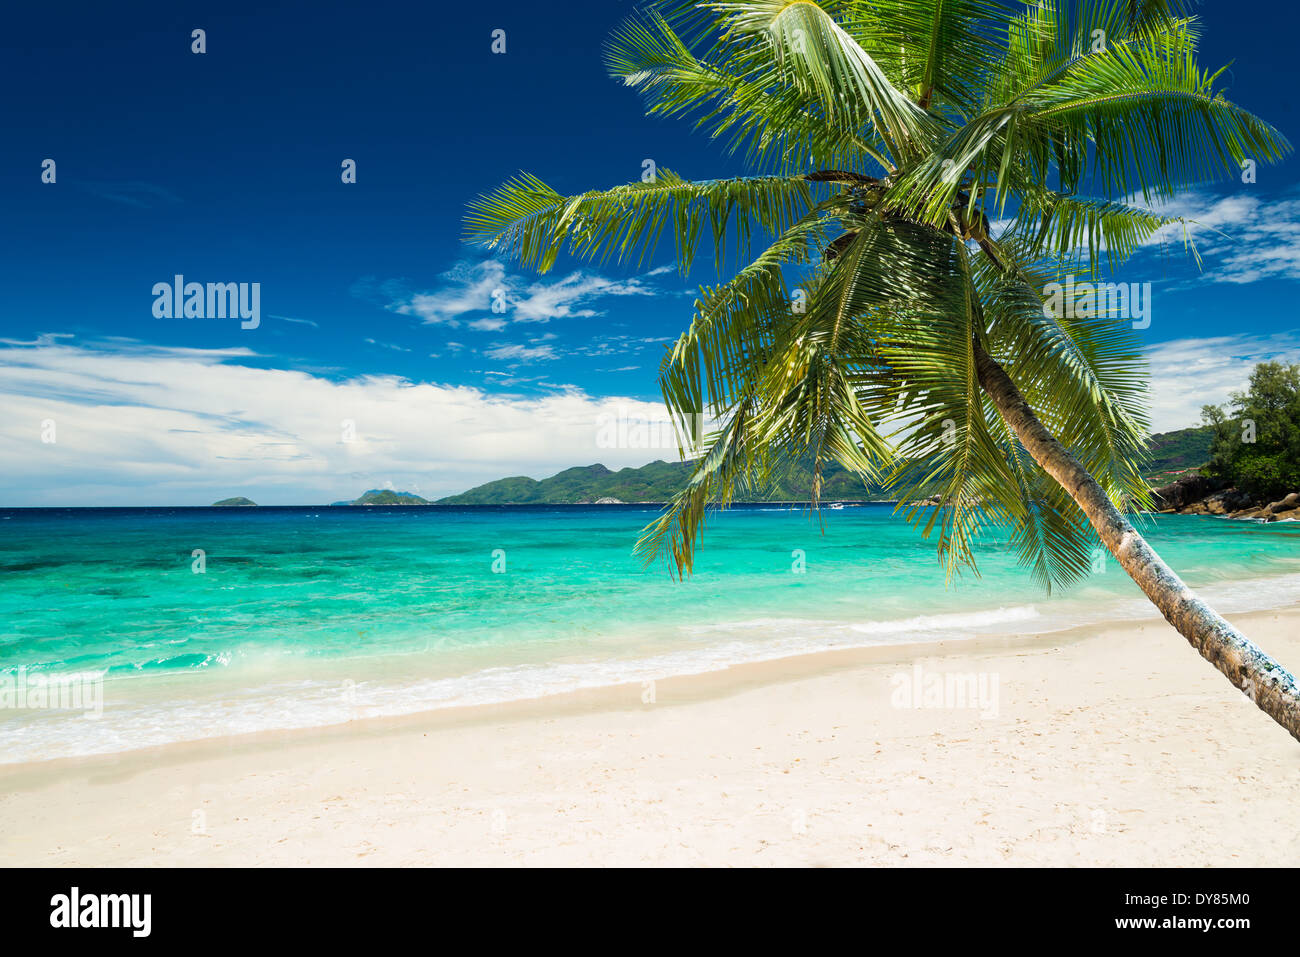 Plage tropicale avec palmiers et mer turquoise Banque D'Images